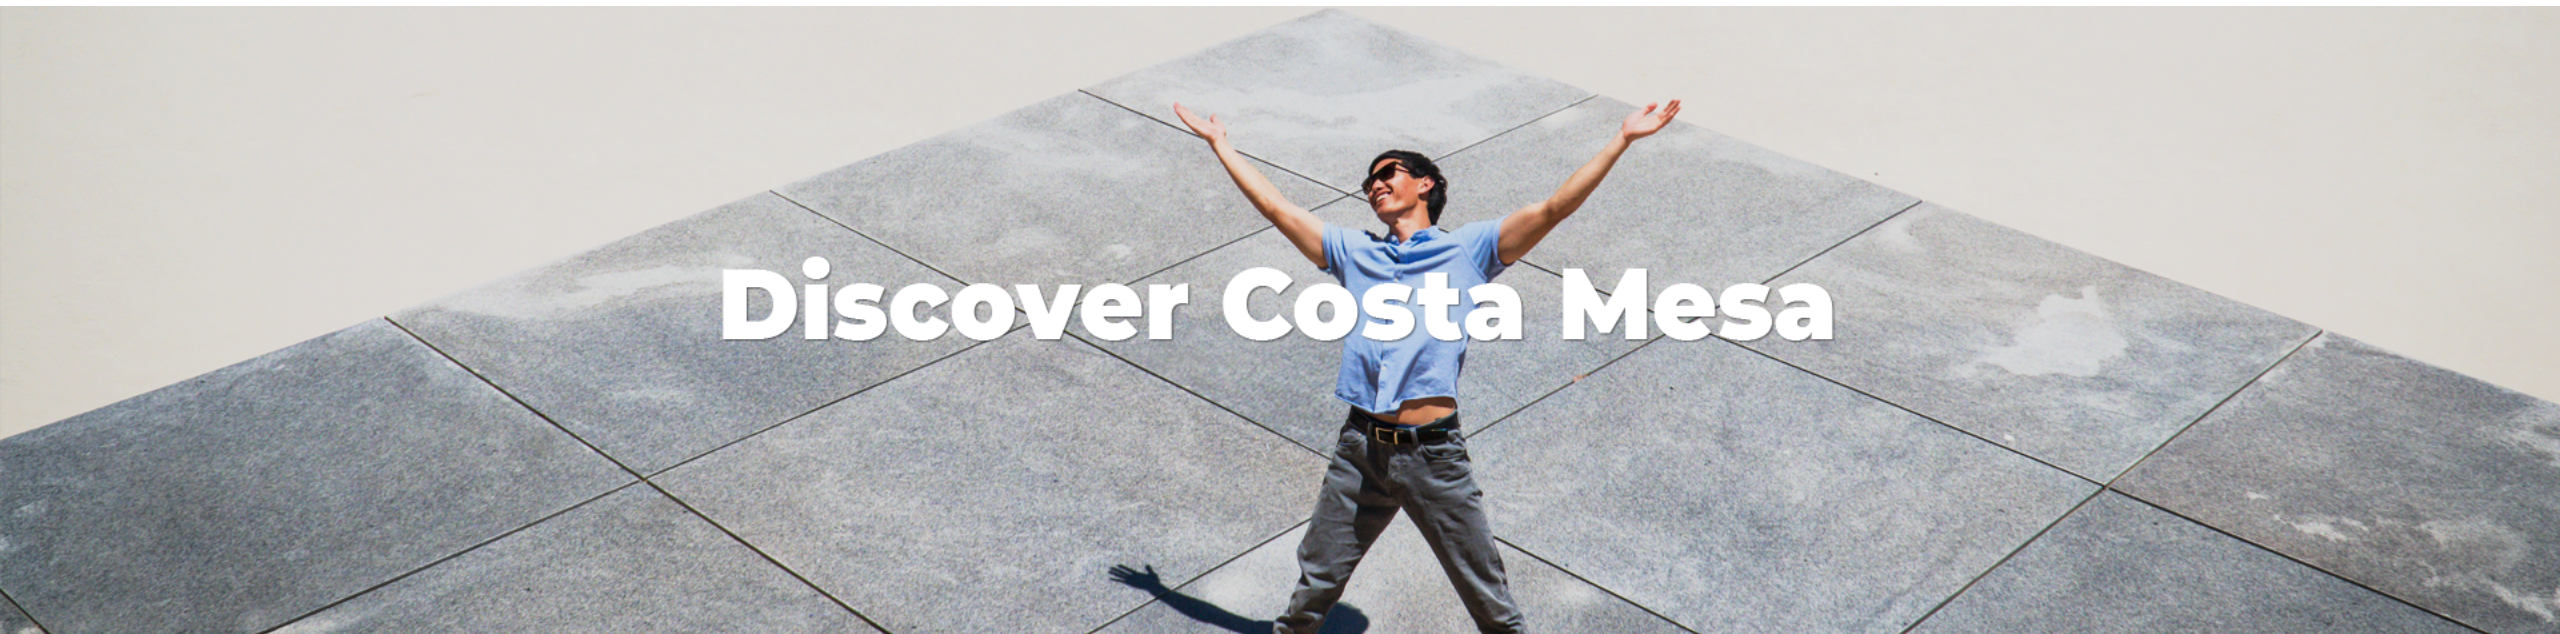 Discover Costa Mesa New